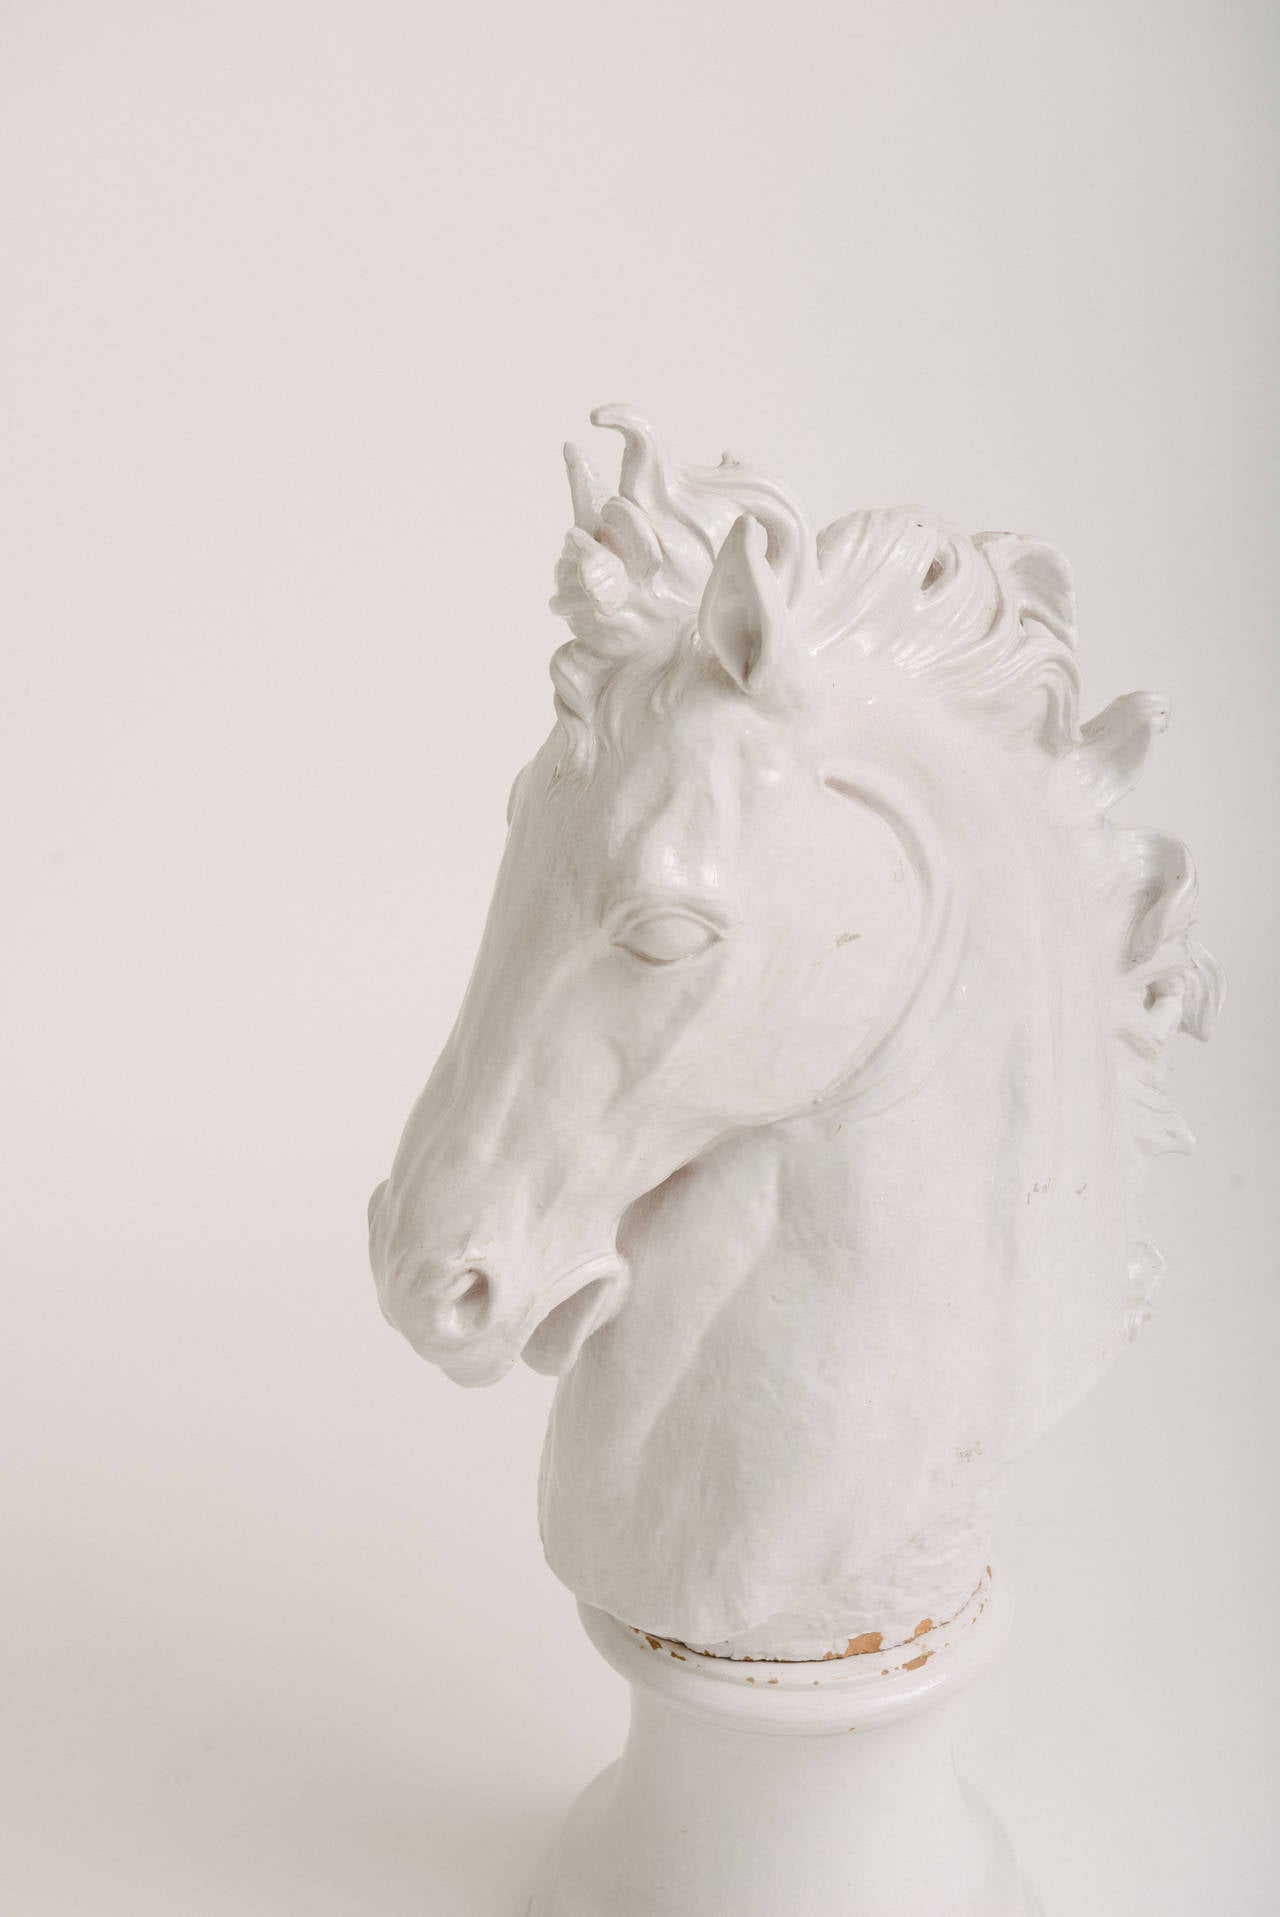 Importante sculpture italienne de tête de cheval en terre cuite émaillée blanche sur pied. Petits éclats de glaçure à l'endroit où la base rencontre la sculpture. Facile à retoucher si vous le souhaitez.